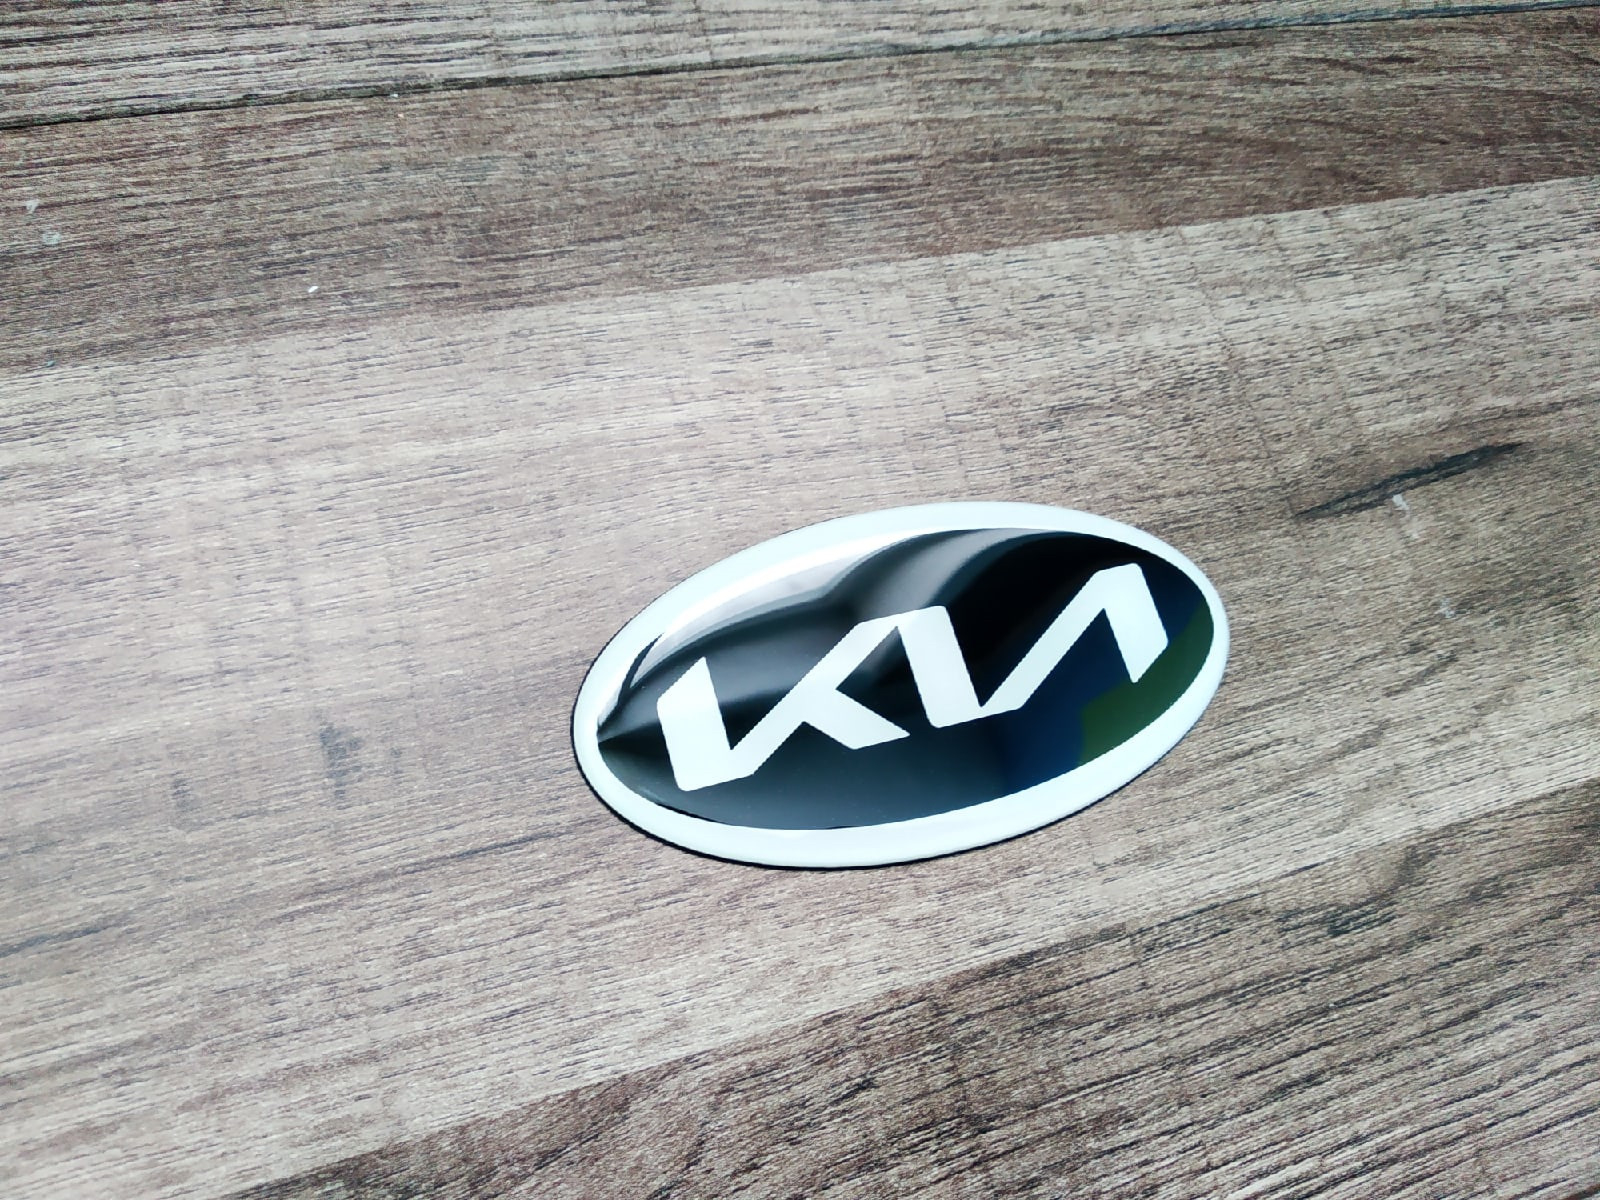 Logos 2021. Новый значок Киа 2021. Шильдик Kia 2021. Kia новый шильдик 2021. Kia logo 2022.